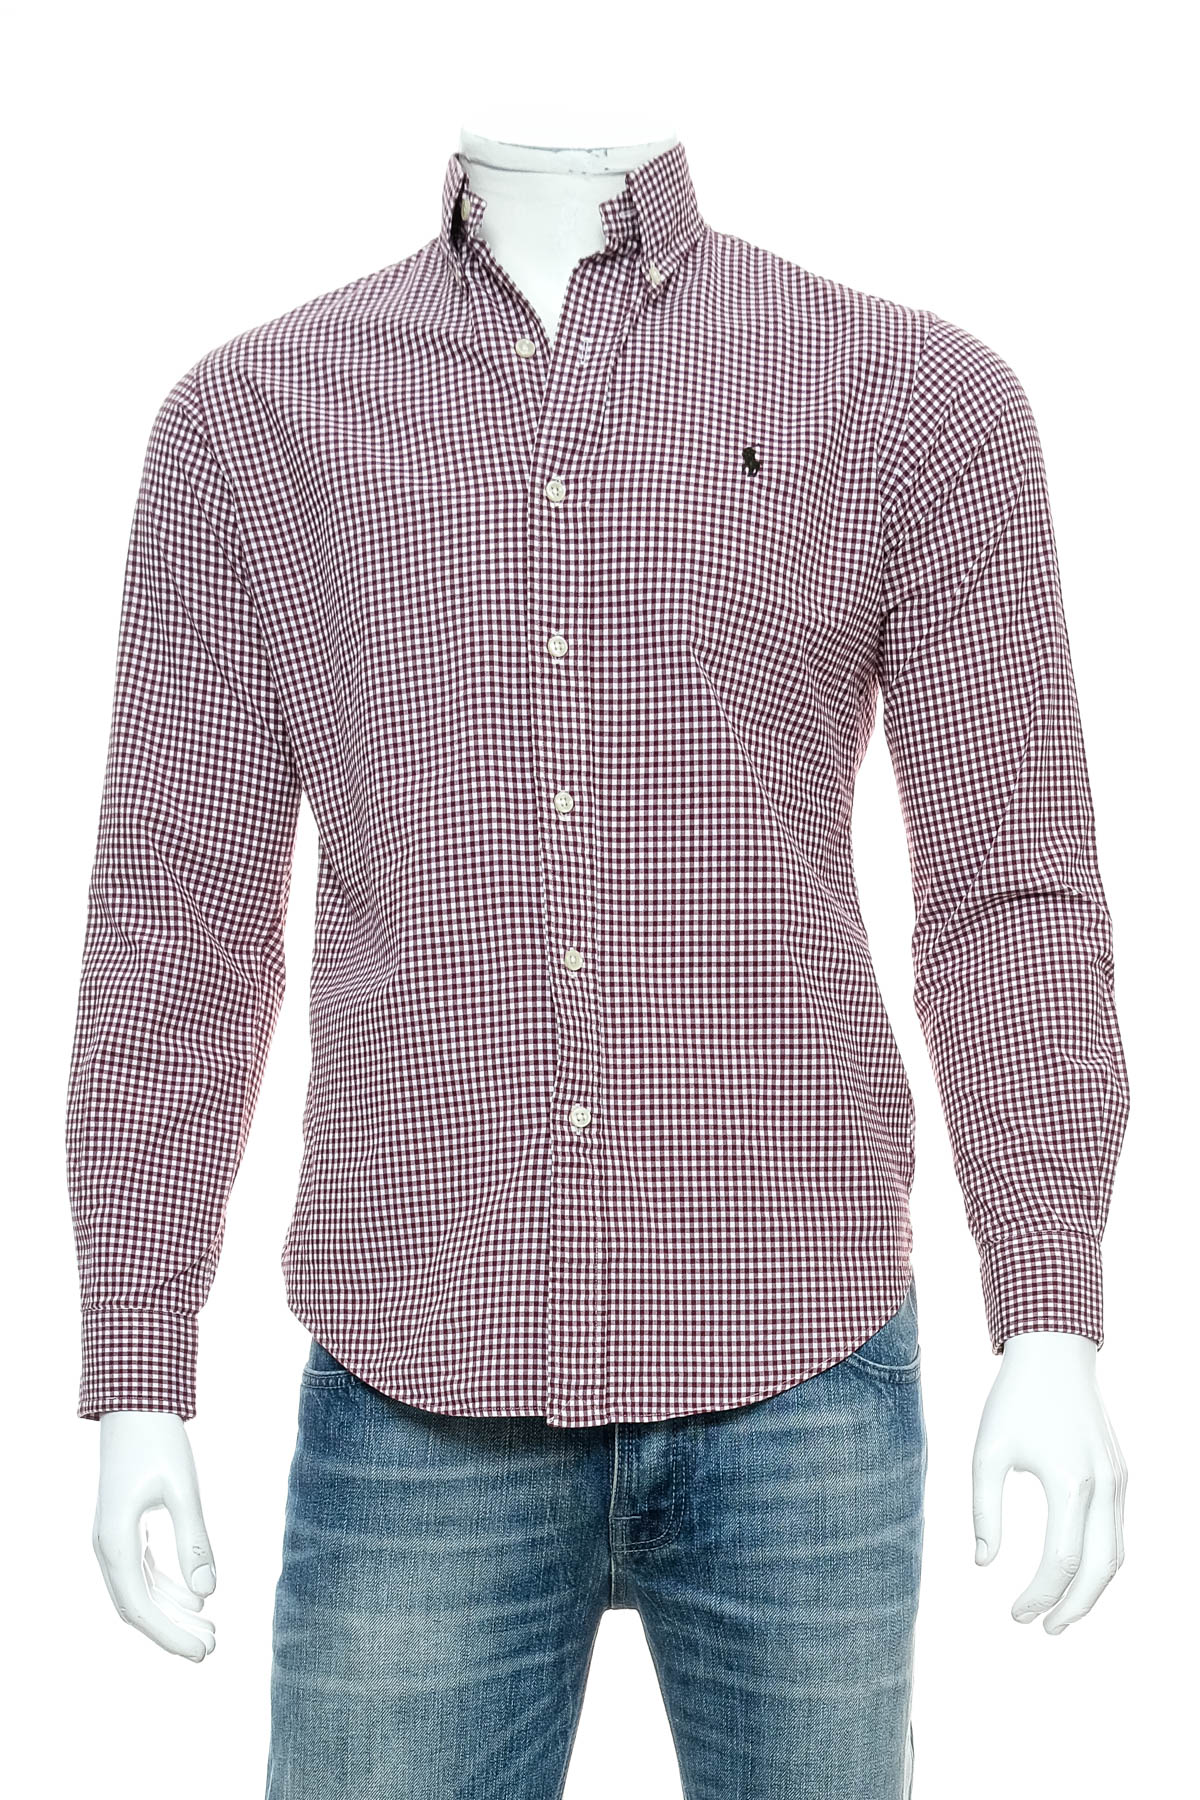 Ανδρικό πουκάμισο - Ralph Lauren - 0